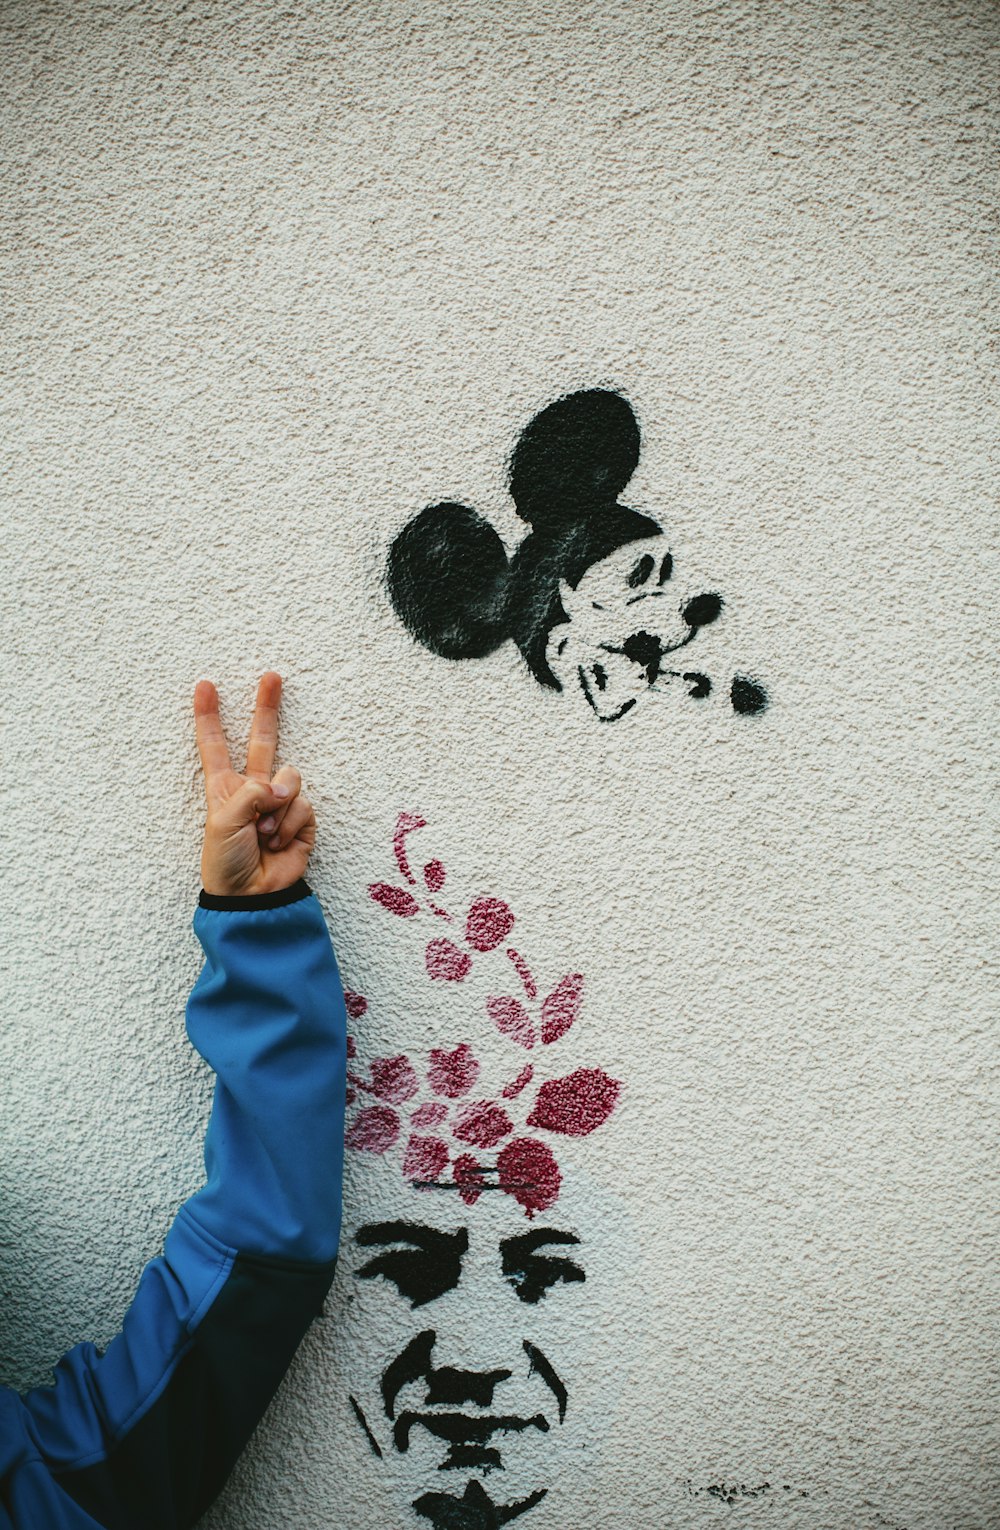 Mickey Mouse y la cara del hombre pintada en la pared